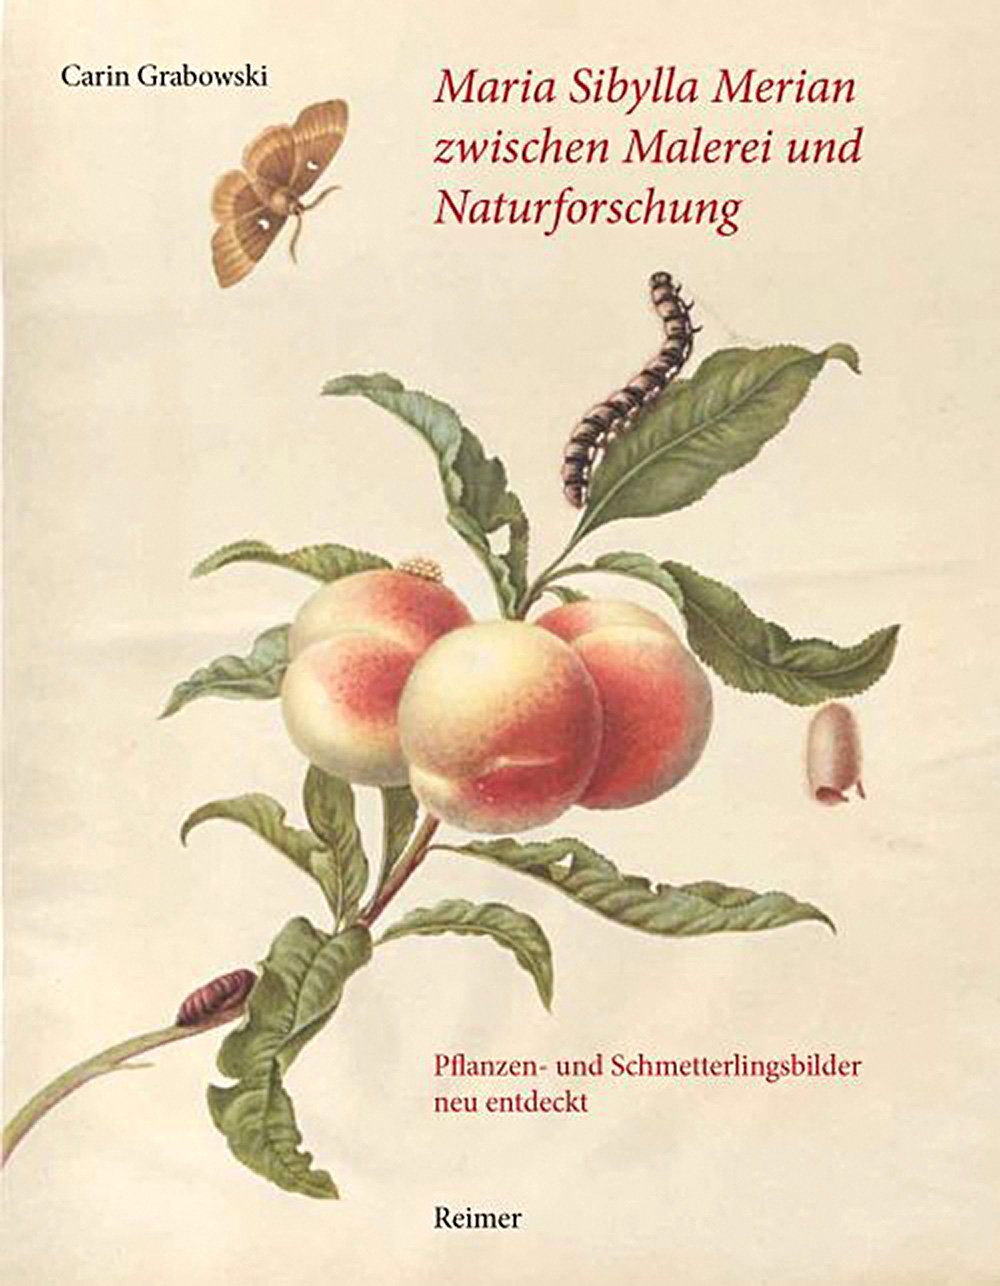 Carin Grabowski. Maria Sibylla Merian zwischen Malerei und Naturforschung.Reimer Verlag. 480 с. €79. На немецком языке.